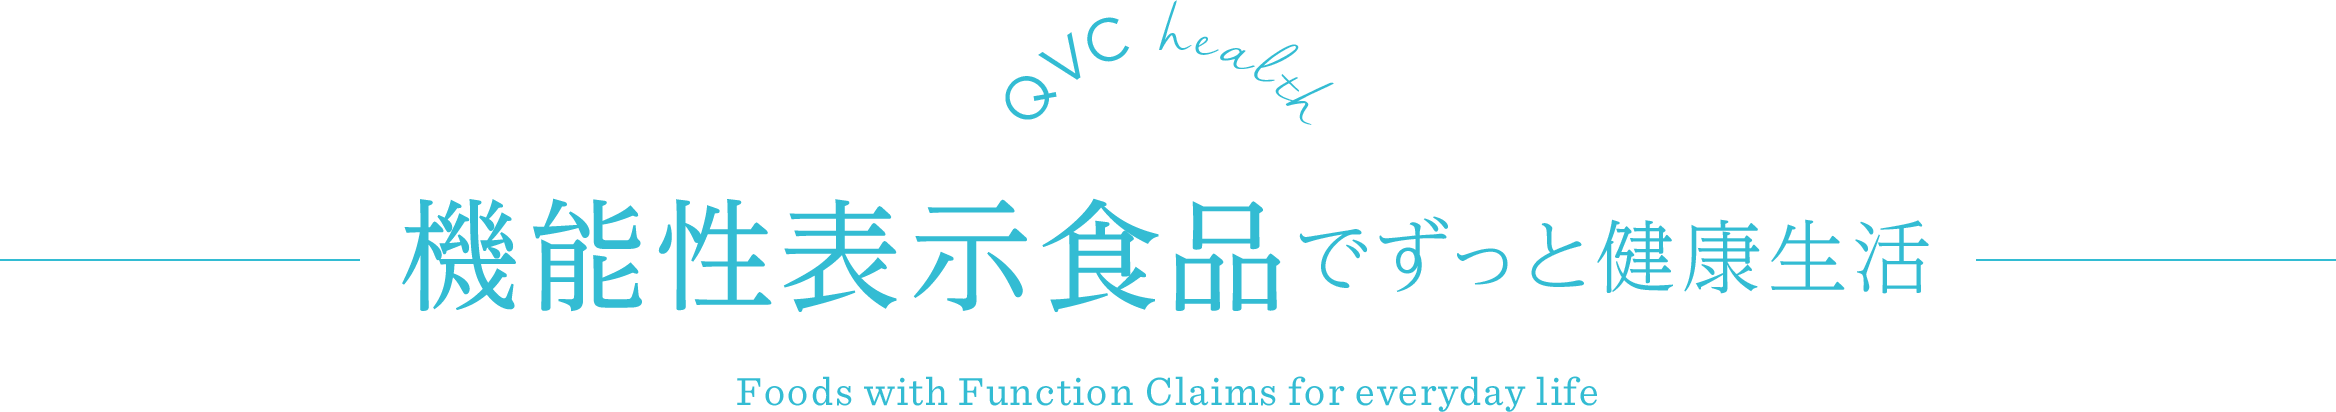 QVC health @\\HiłƌN